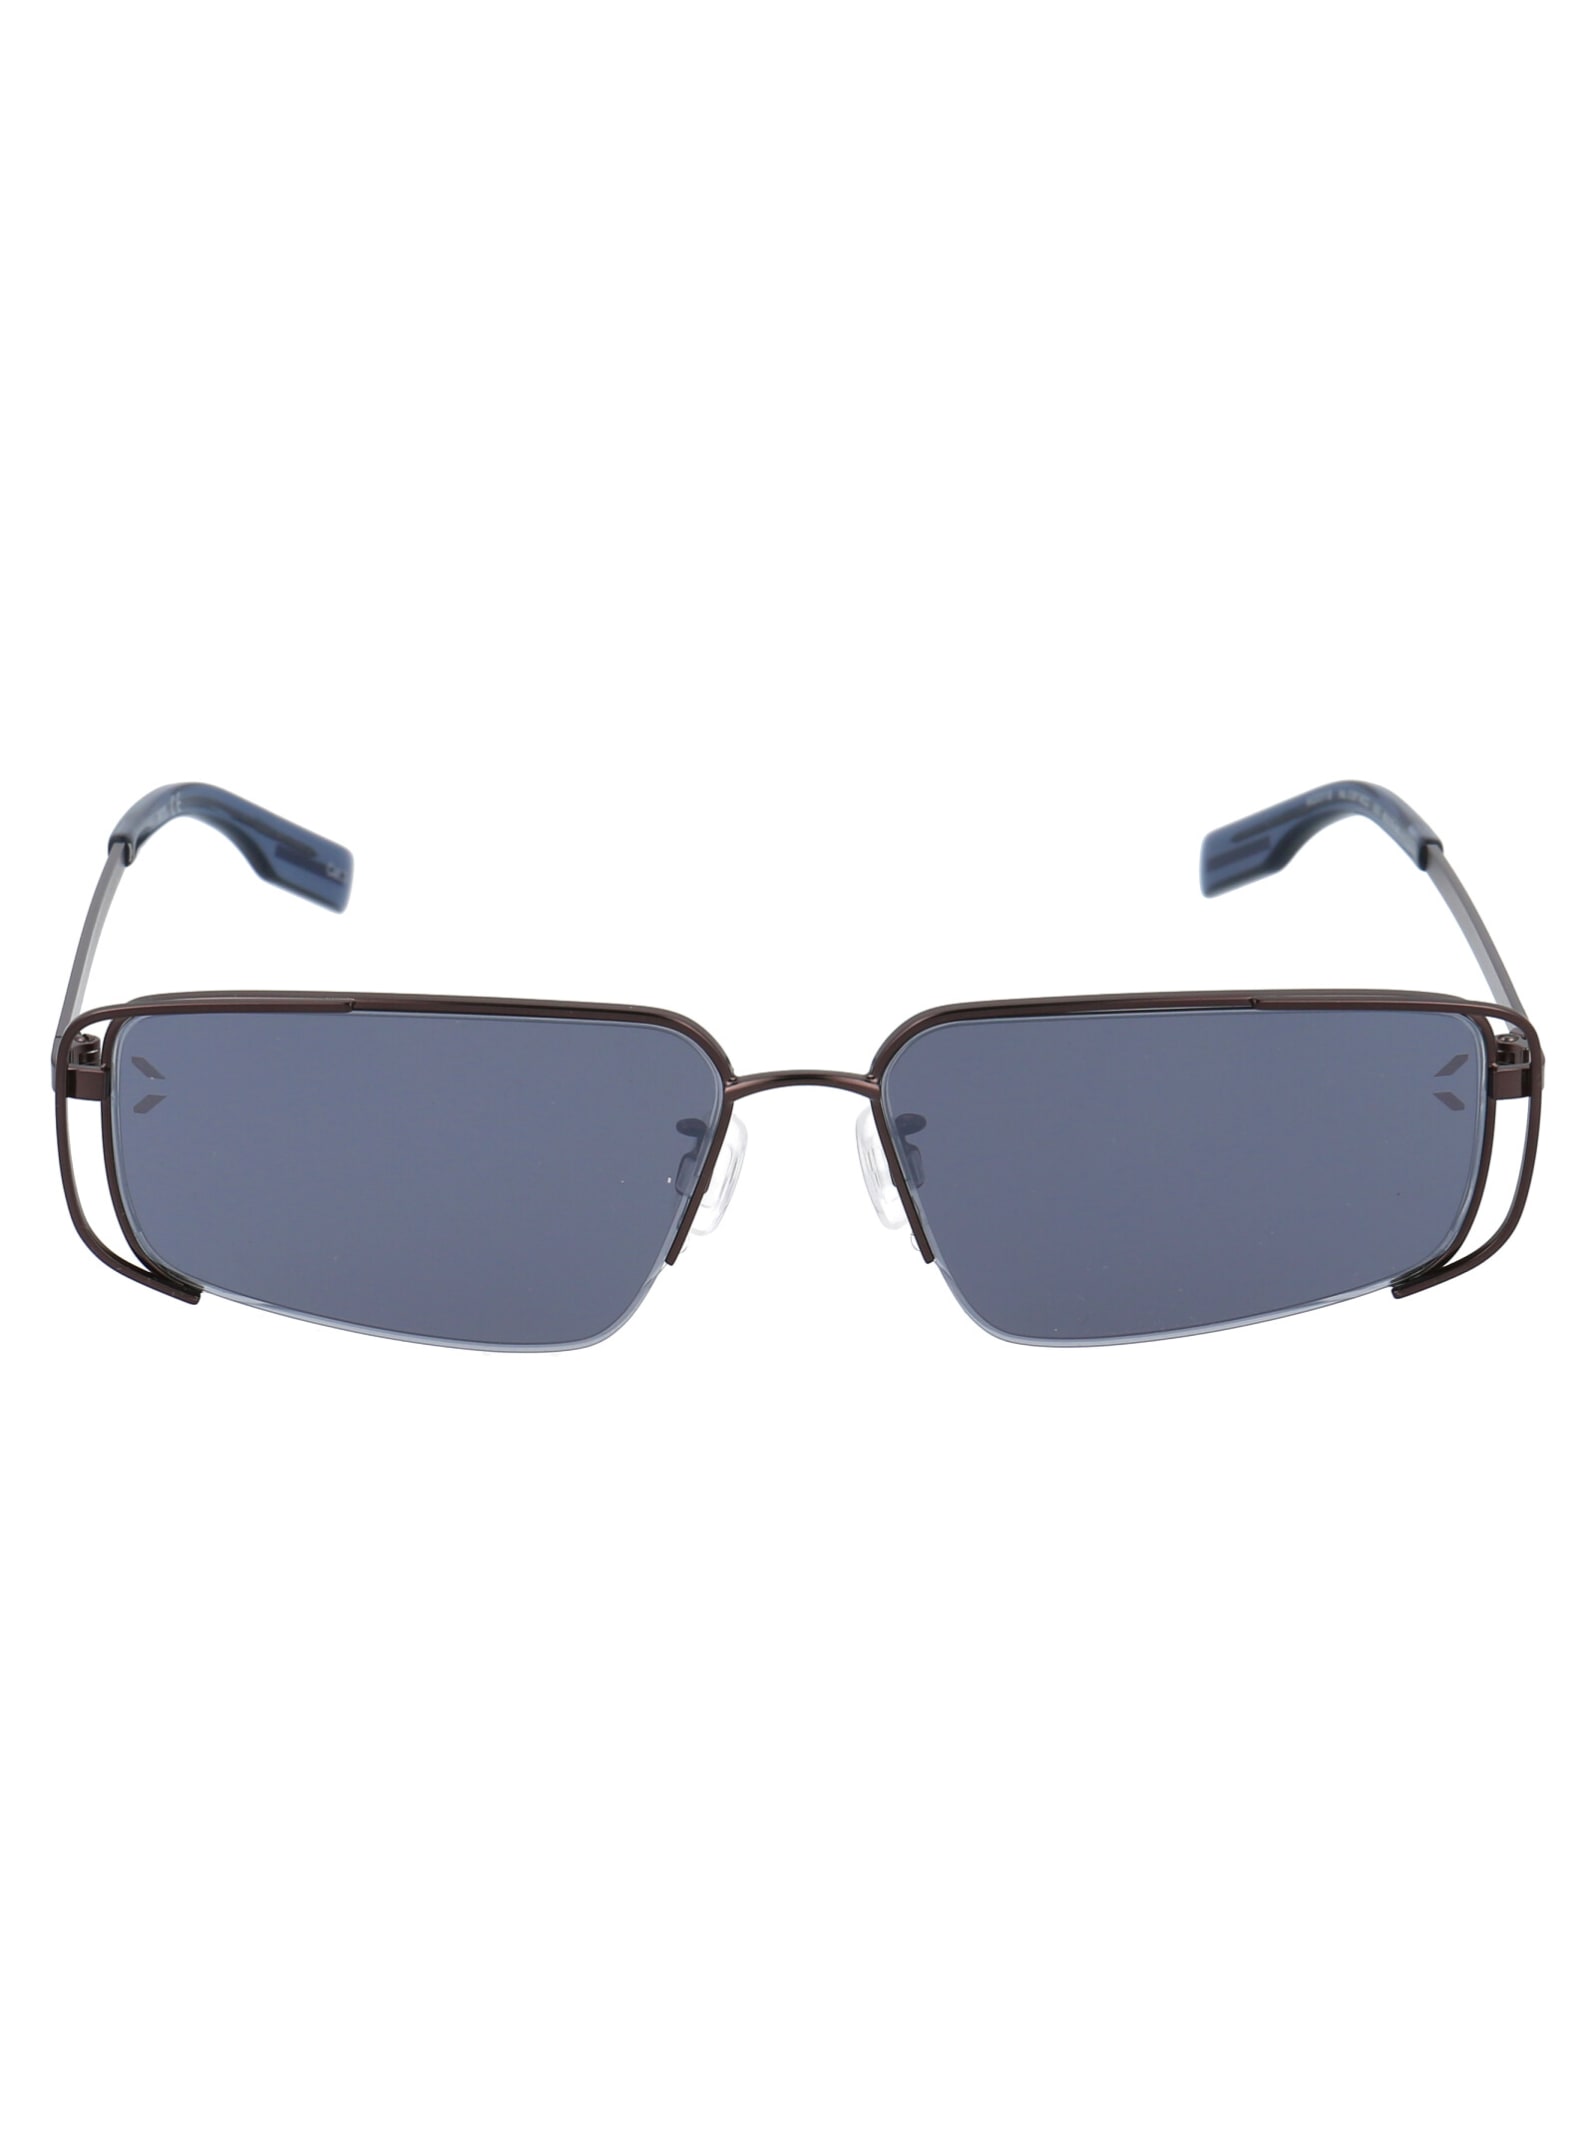 McQ Alexander McQueen Mq0311s Sunglasses